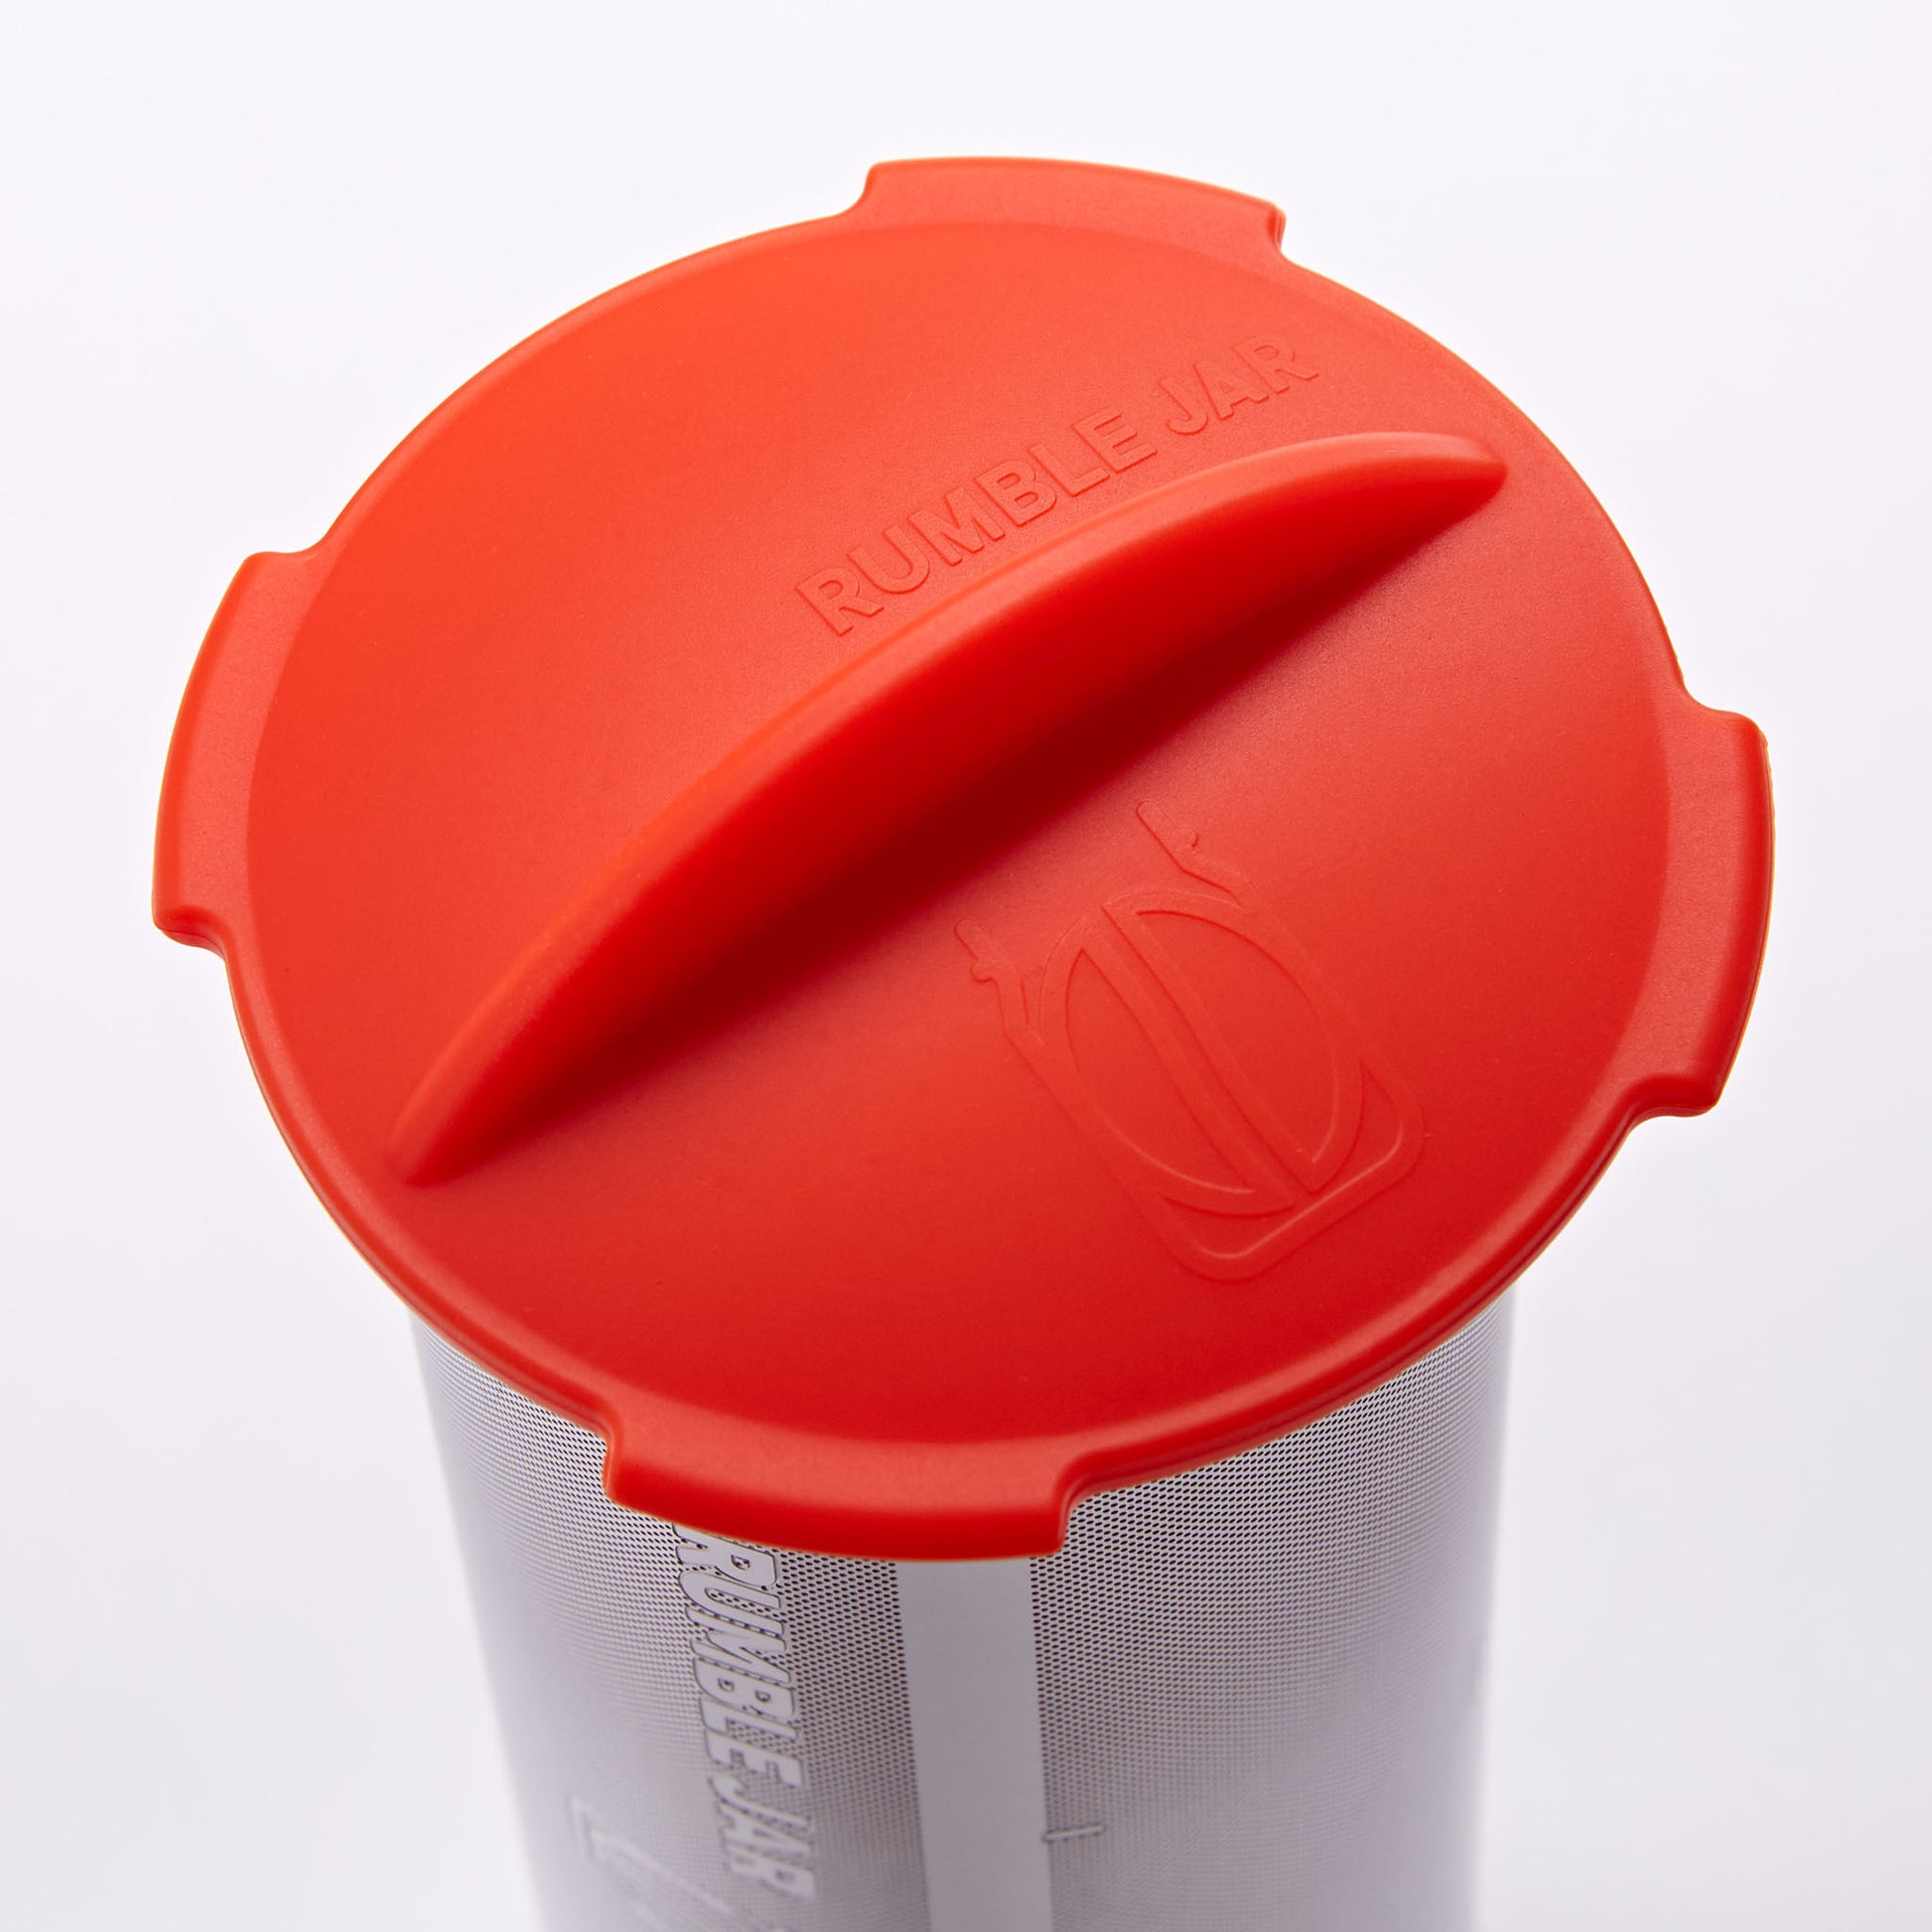 Rumble Jar's silicone cap in Orangey-Red